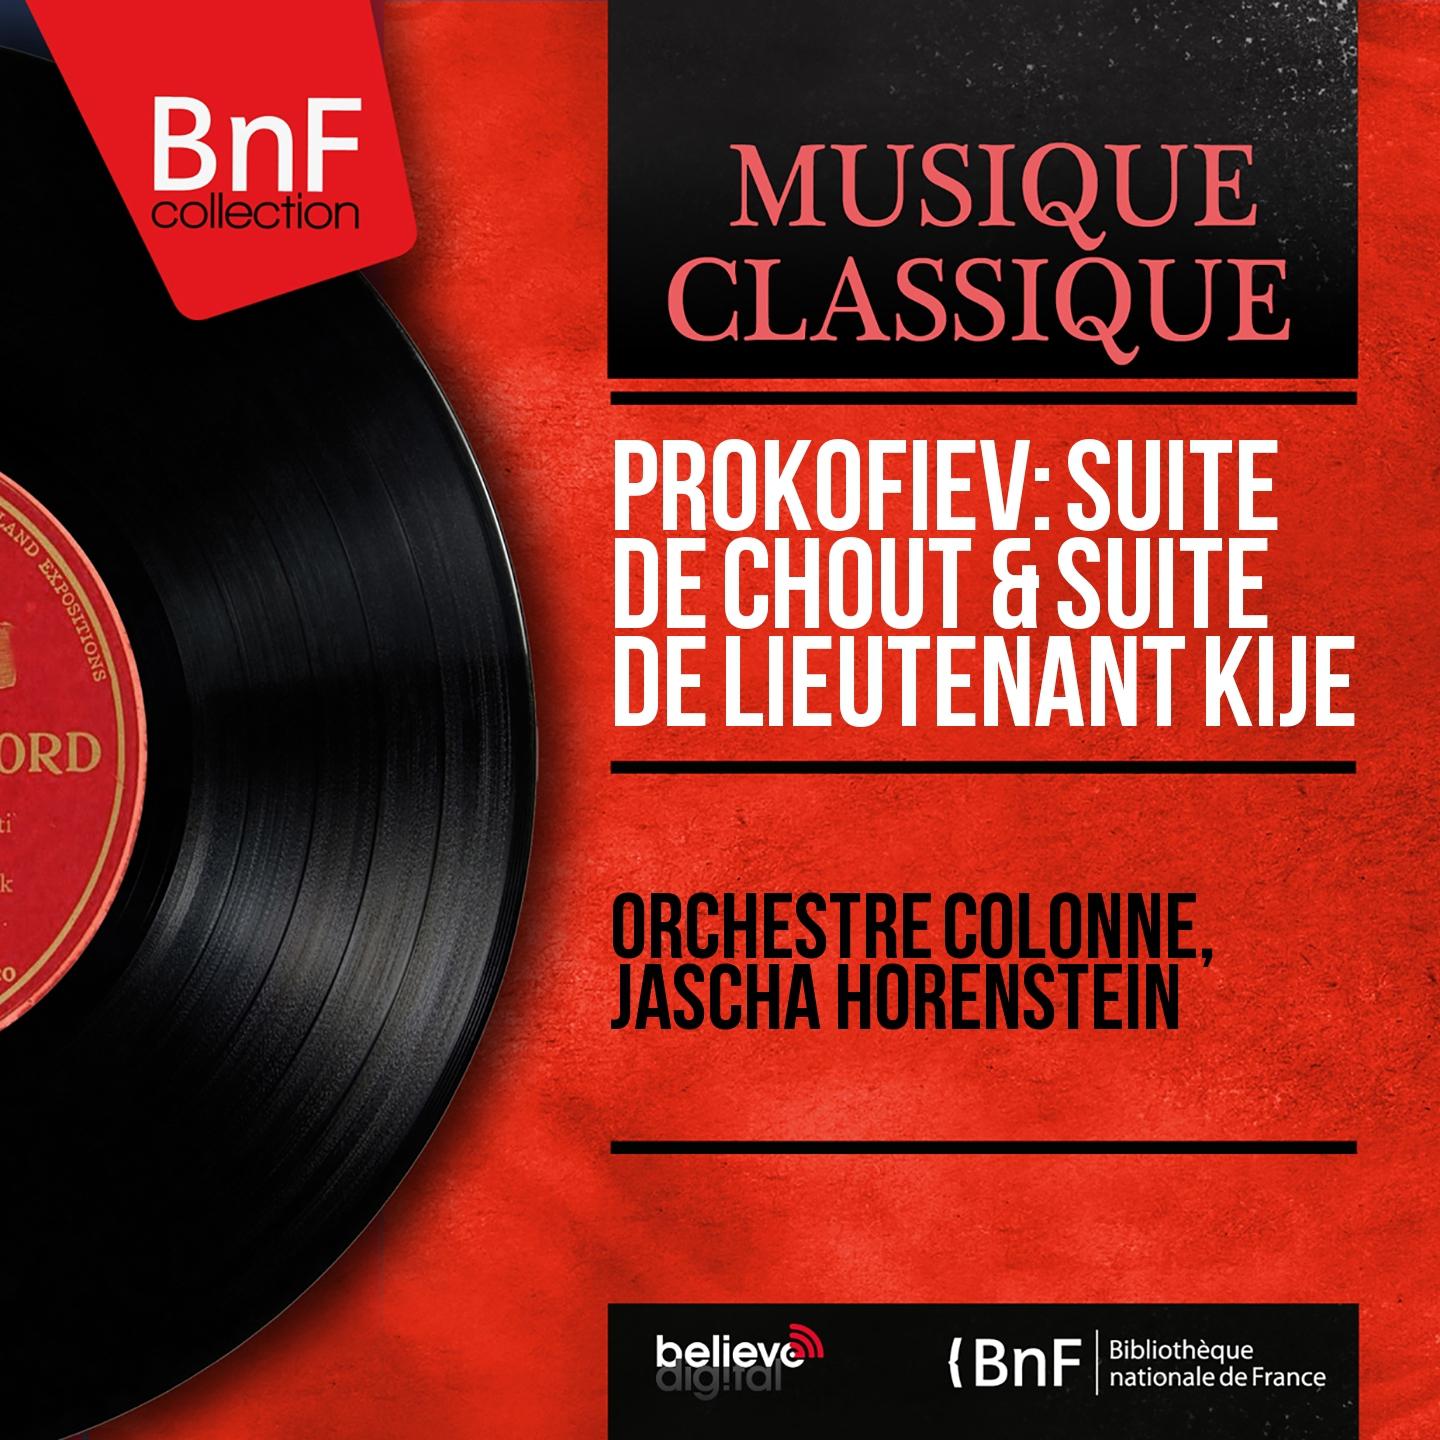 Prokofiev: Suite de Chout & Suite de Lieutenant Kijé (Mono Version)